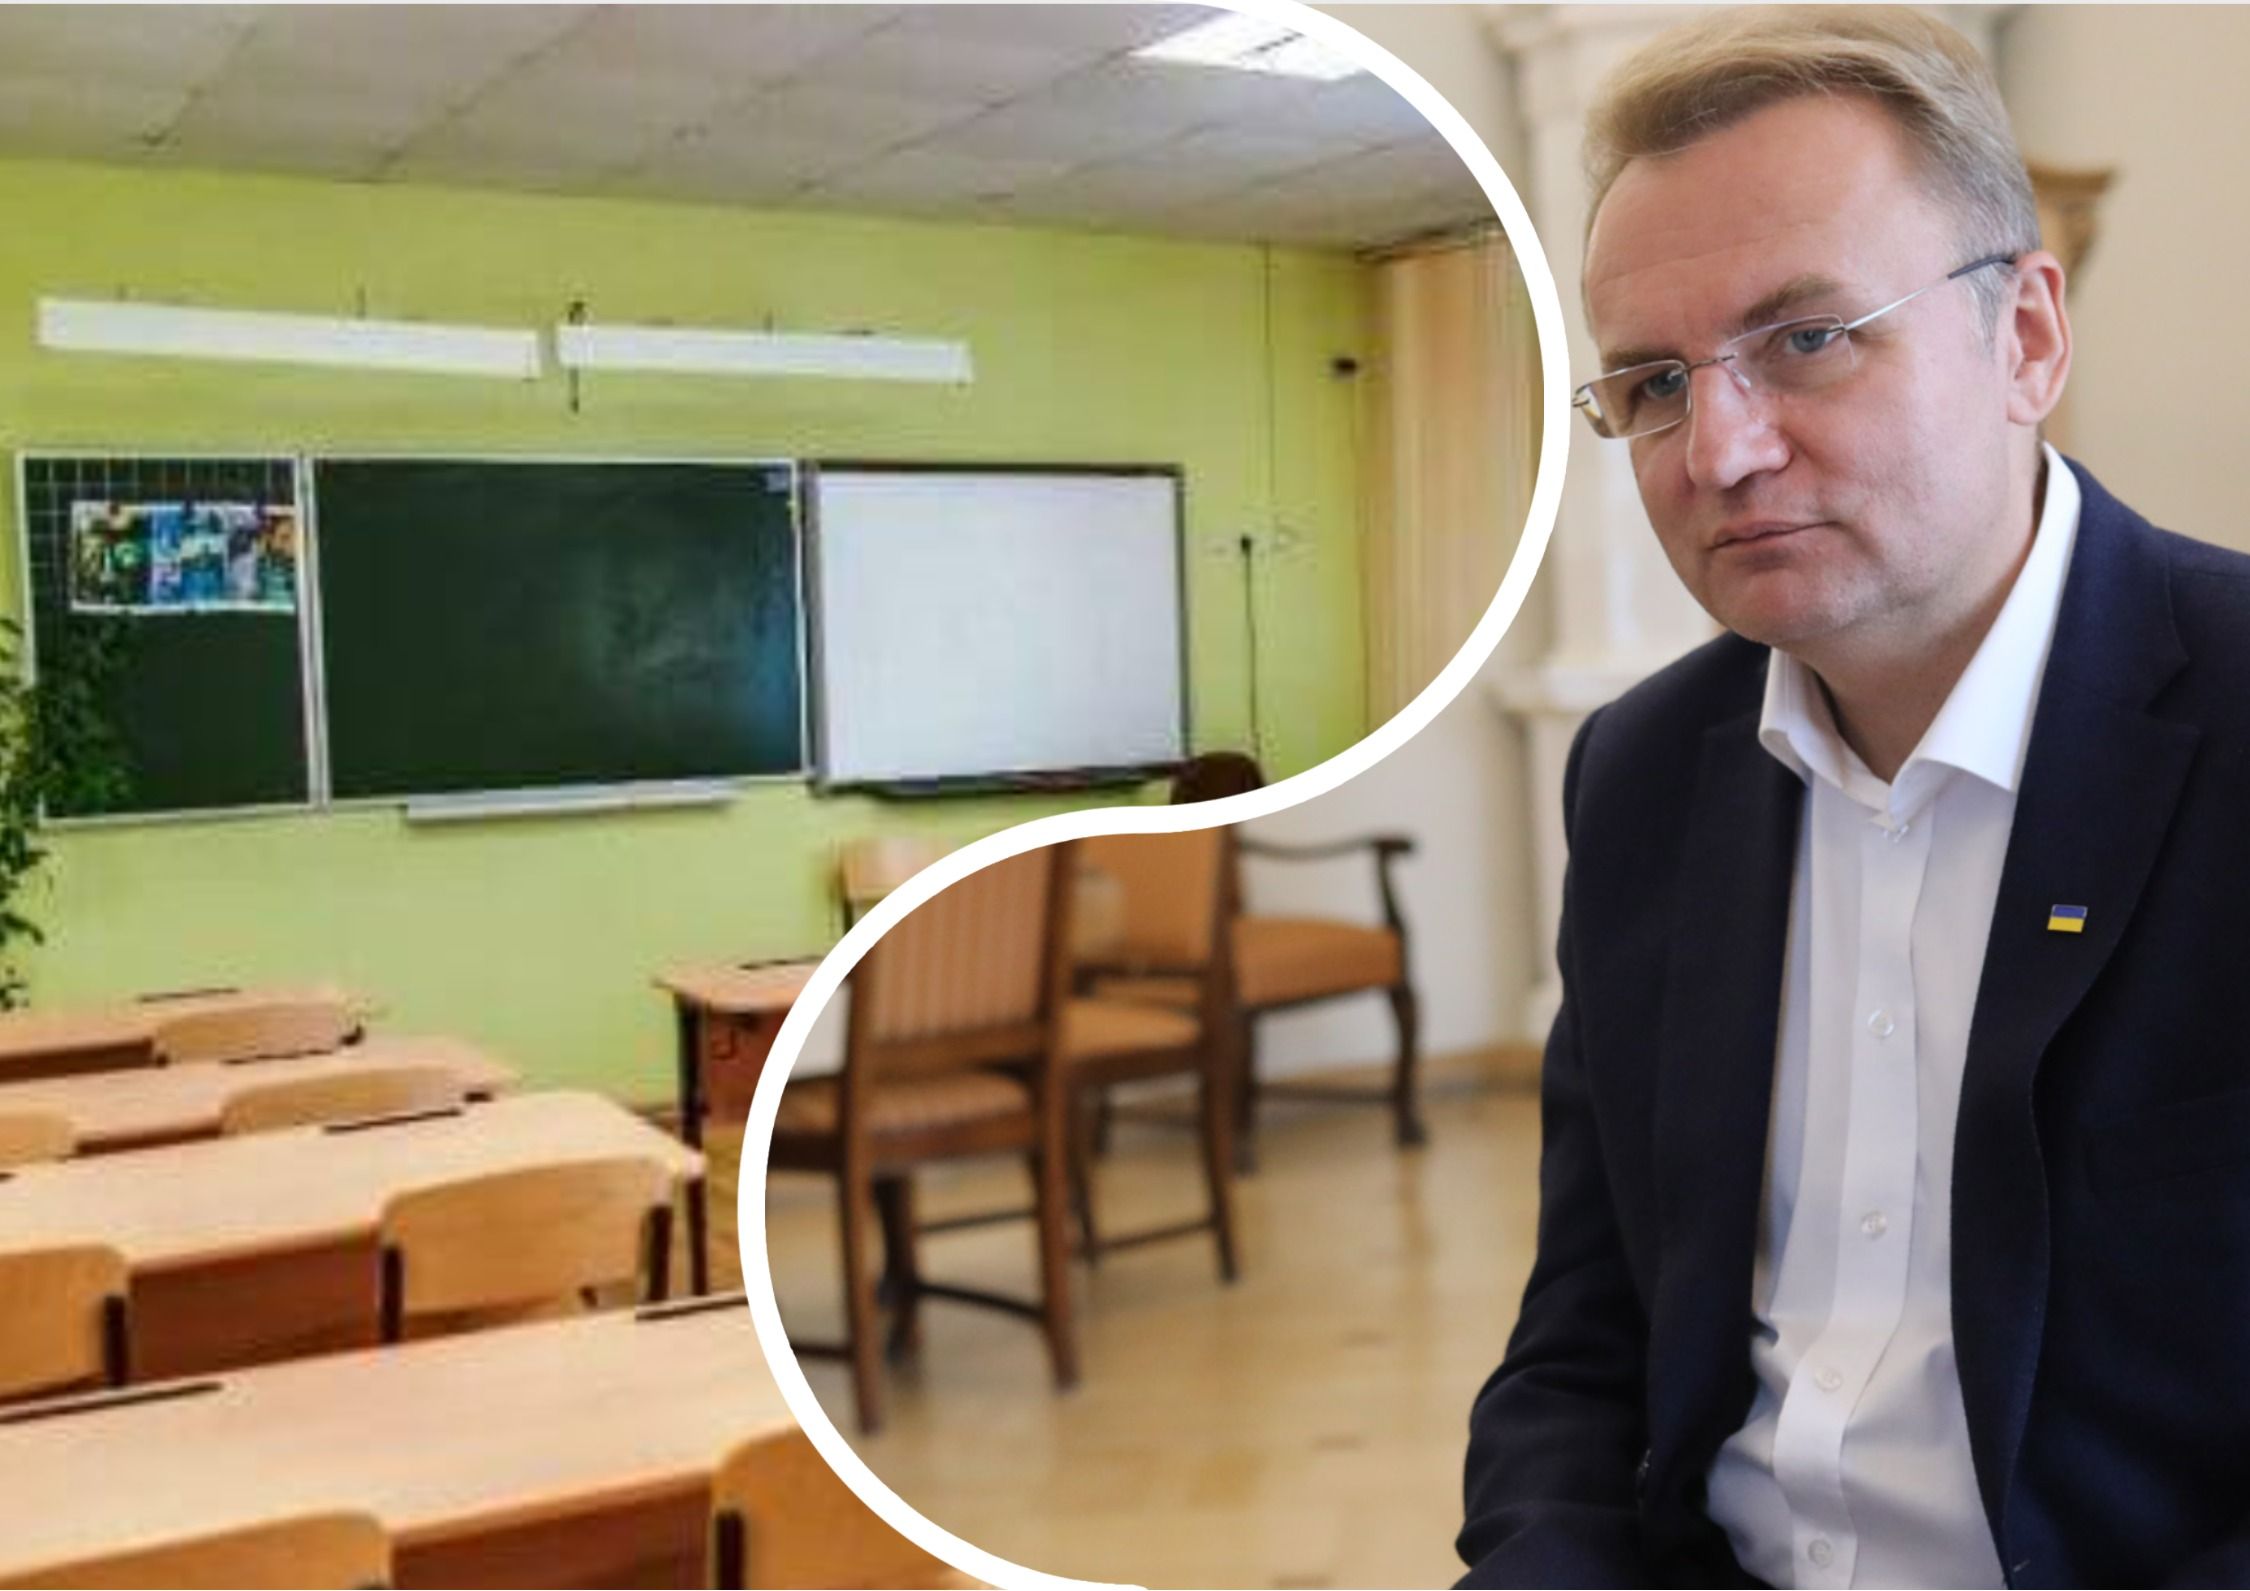 Обучение во Львове - как будут учиться дети и студенты в ближайшие дни - новости Львова - Образование